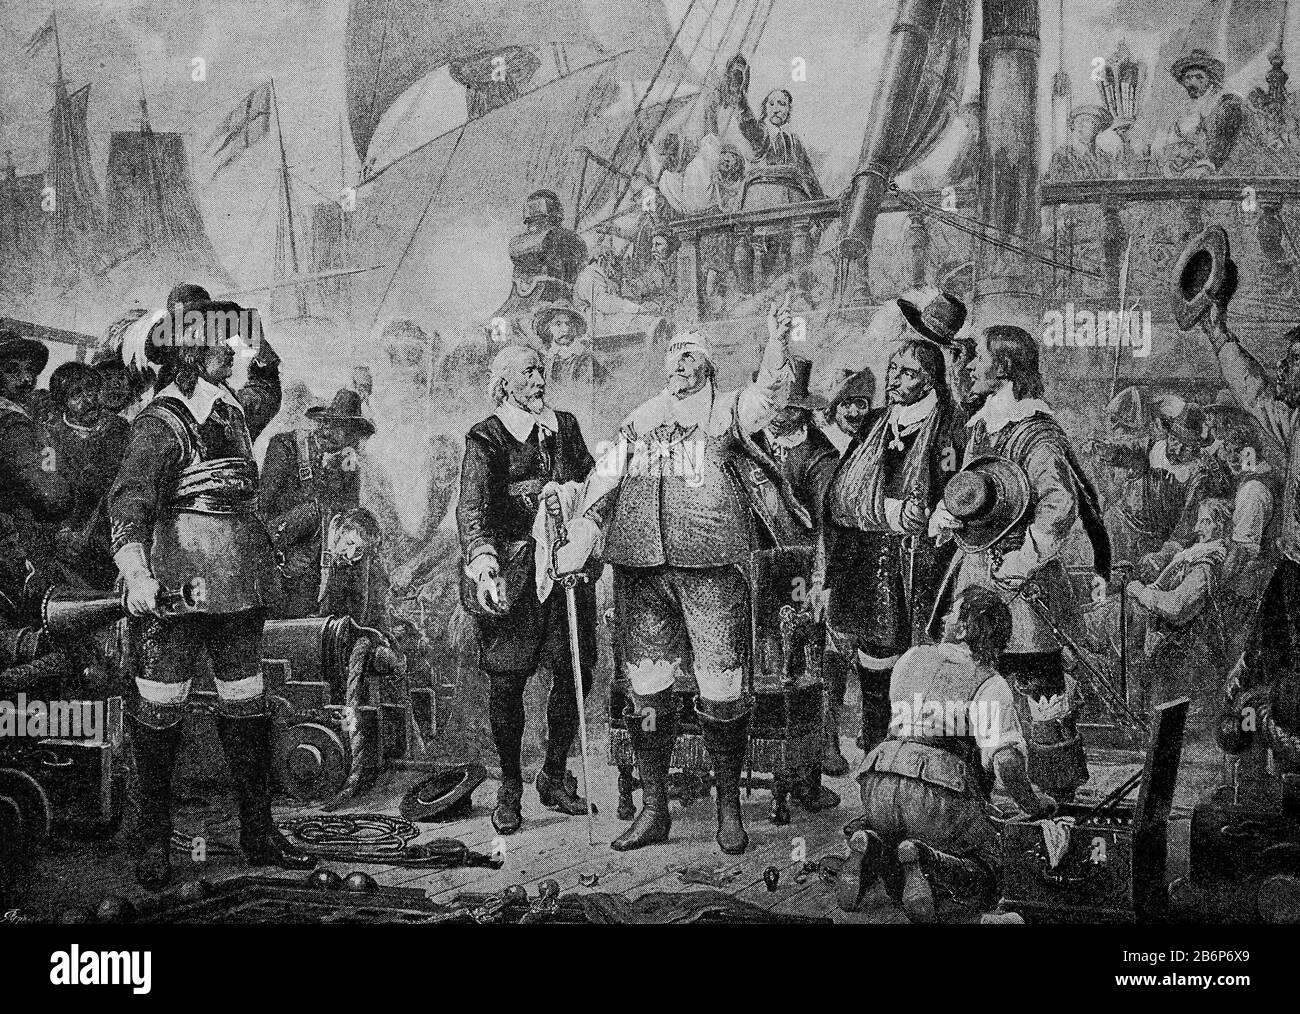 Christian IV dans la bataille navale près de l'île de Fehmarn le 6 juillet 1644, dans la bataille navale près de Fehmarn le 13 octobre 1644 les Suédois alliés et les Néerlandais ont détruit une flotte danoise, la guerre de trente Ans / Christian IV dans der Seeschlacht bei der Insel Fehmarn am 6. Juli 1644, in der Seeschlacht bei Fehmarn vernichteten am 13. Oktober 1644 die verbündeten Schweden und Niederländer eine dänische Flotte, dreisigjähriger Krieg, Historisch, digital amélioration de la reproduction d'un original du XIXe siècle / digitale Reproduktion einer Originalvorlage aus dem 19. Jahrhundert, Banque D'Images